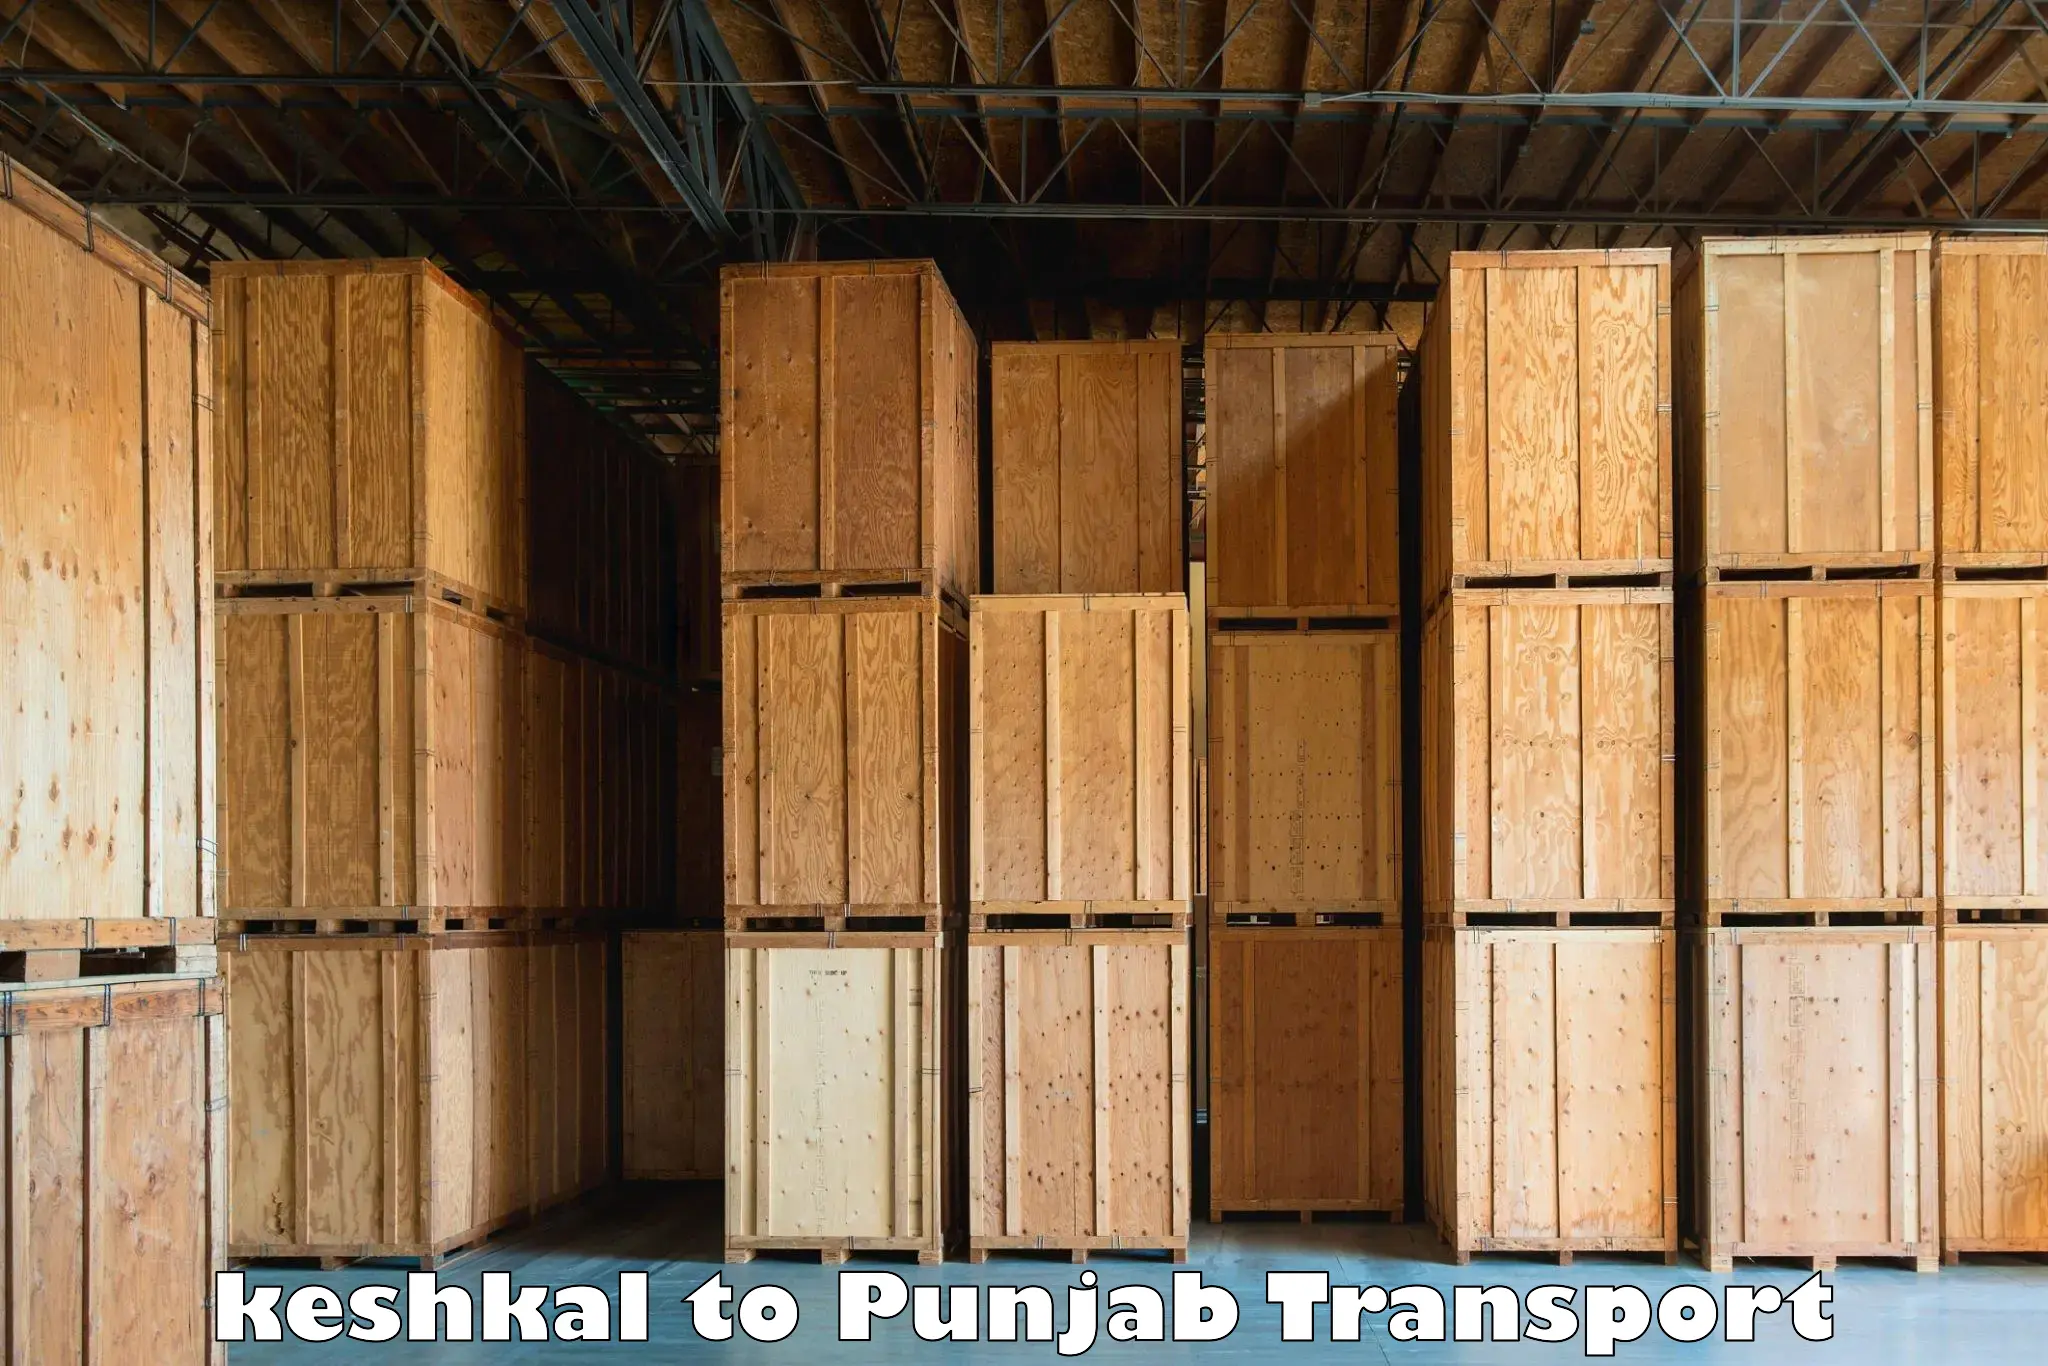 Transport in sharing keshkal to Punjab